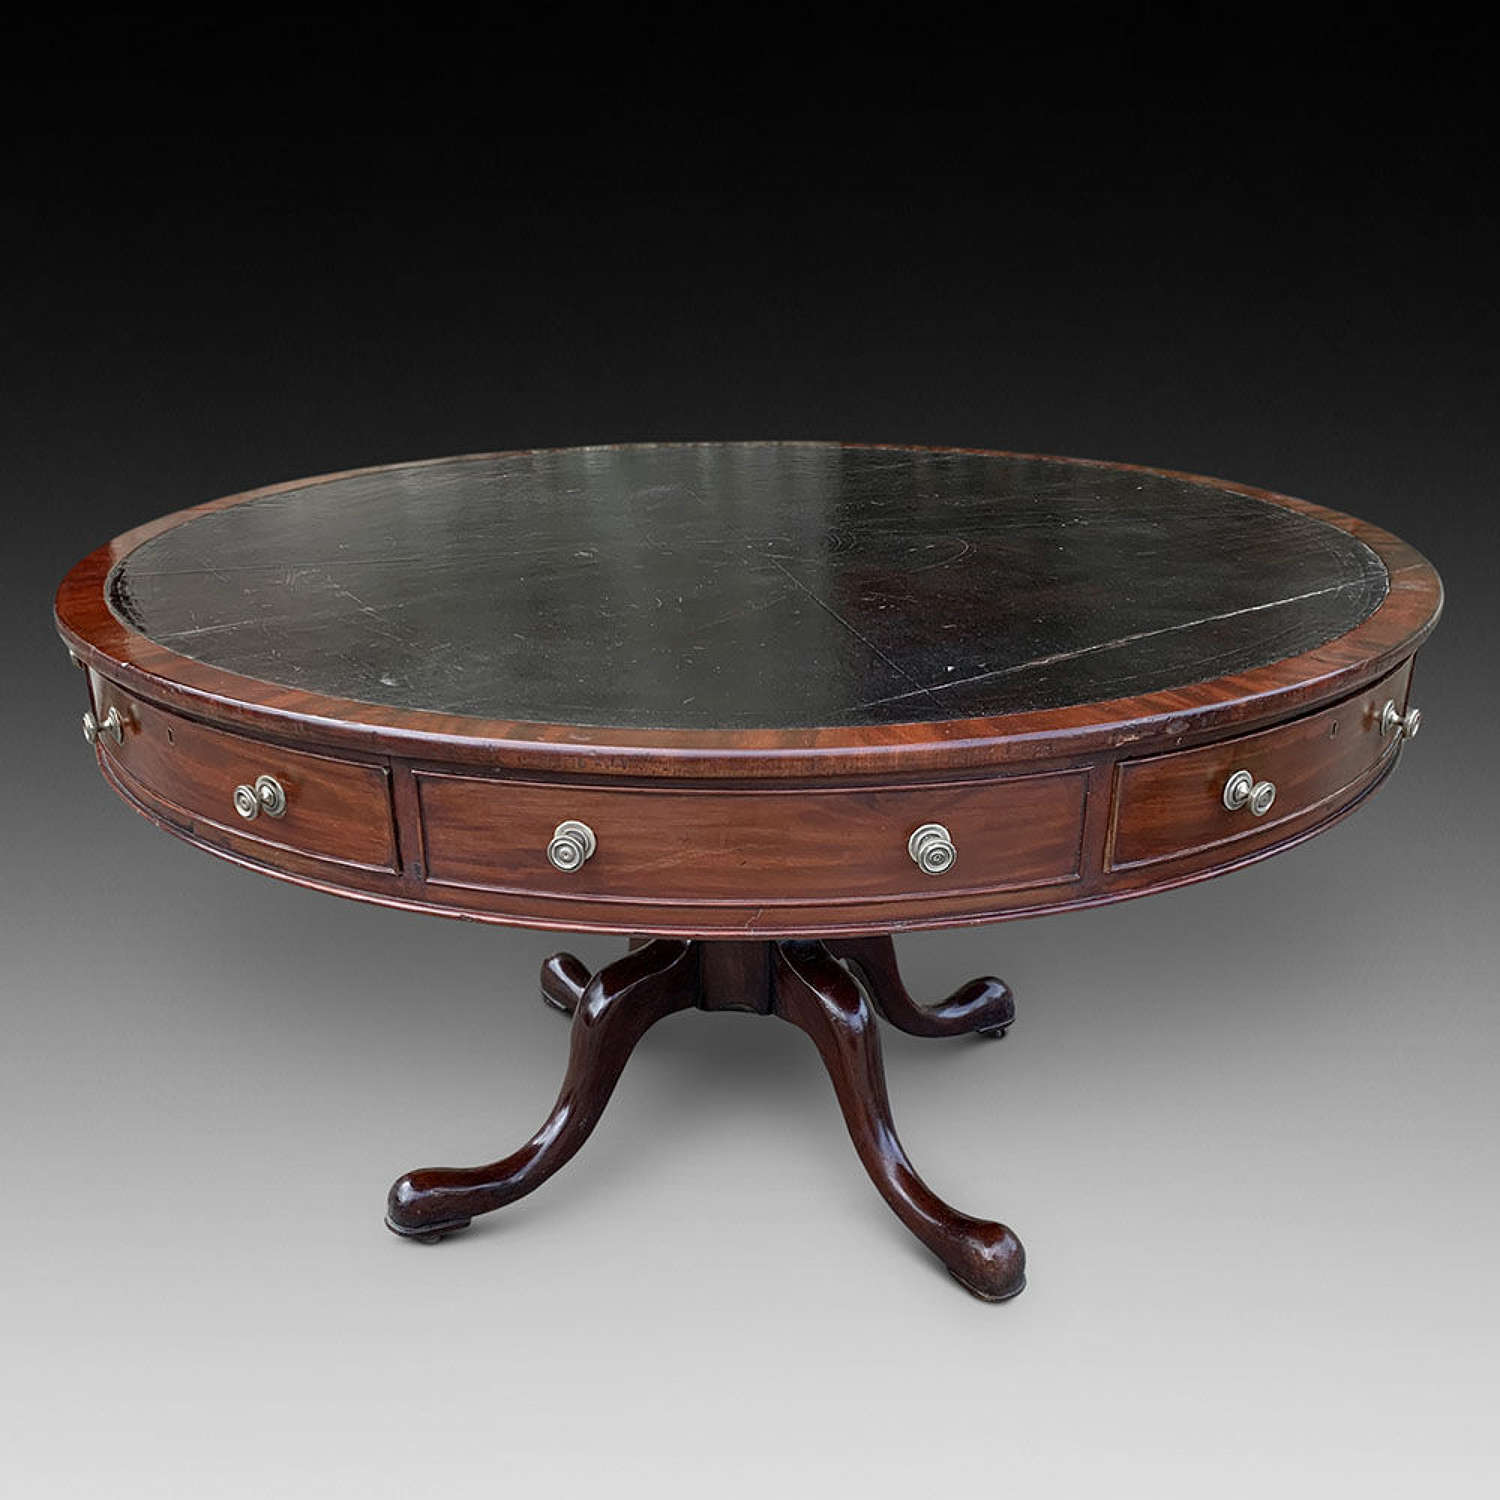 A Good Mahogany Drum Table c.1820-25